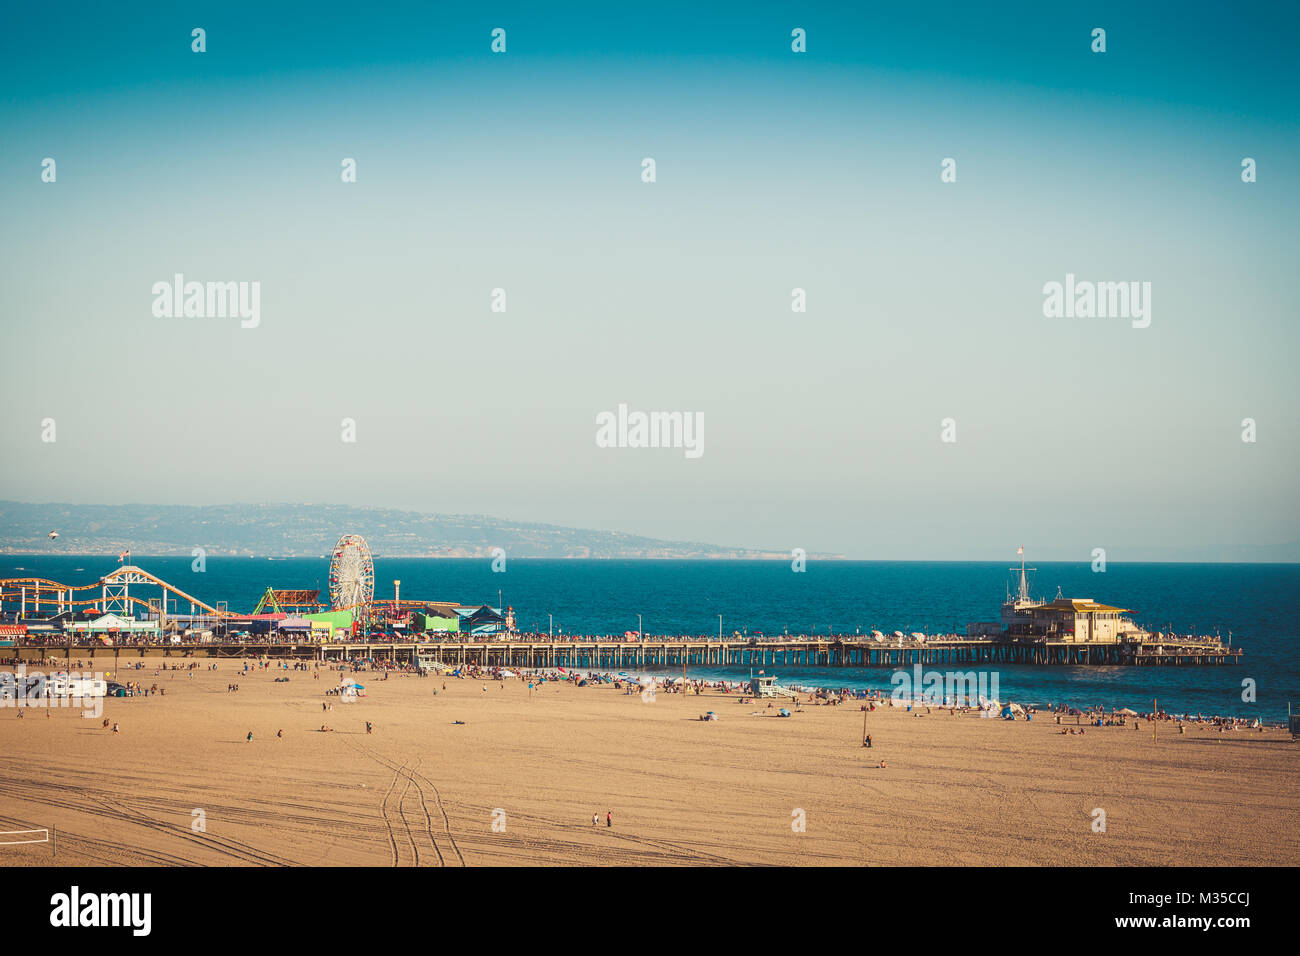 Retro getönten Landschaft der Pier mit Riesenrad von Santa Monica Los Angeles in Kalifornien Stockfoto